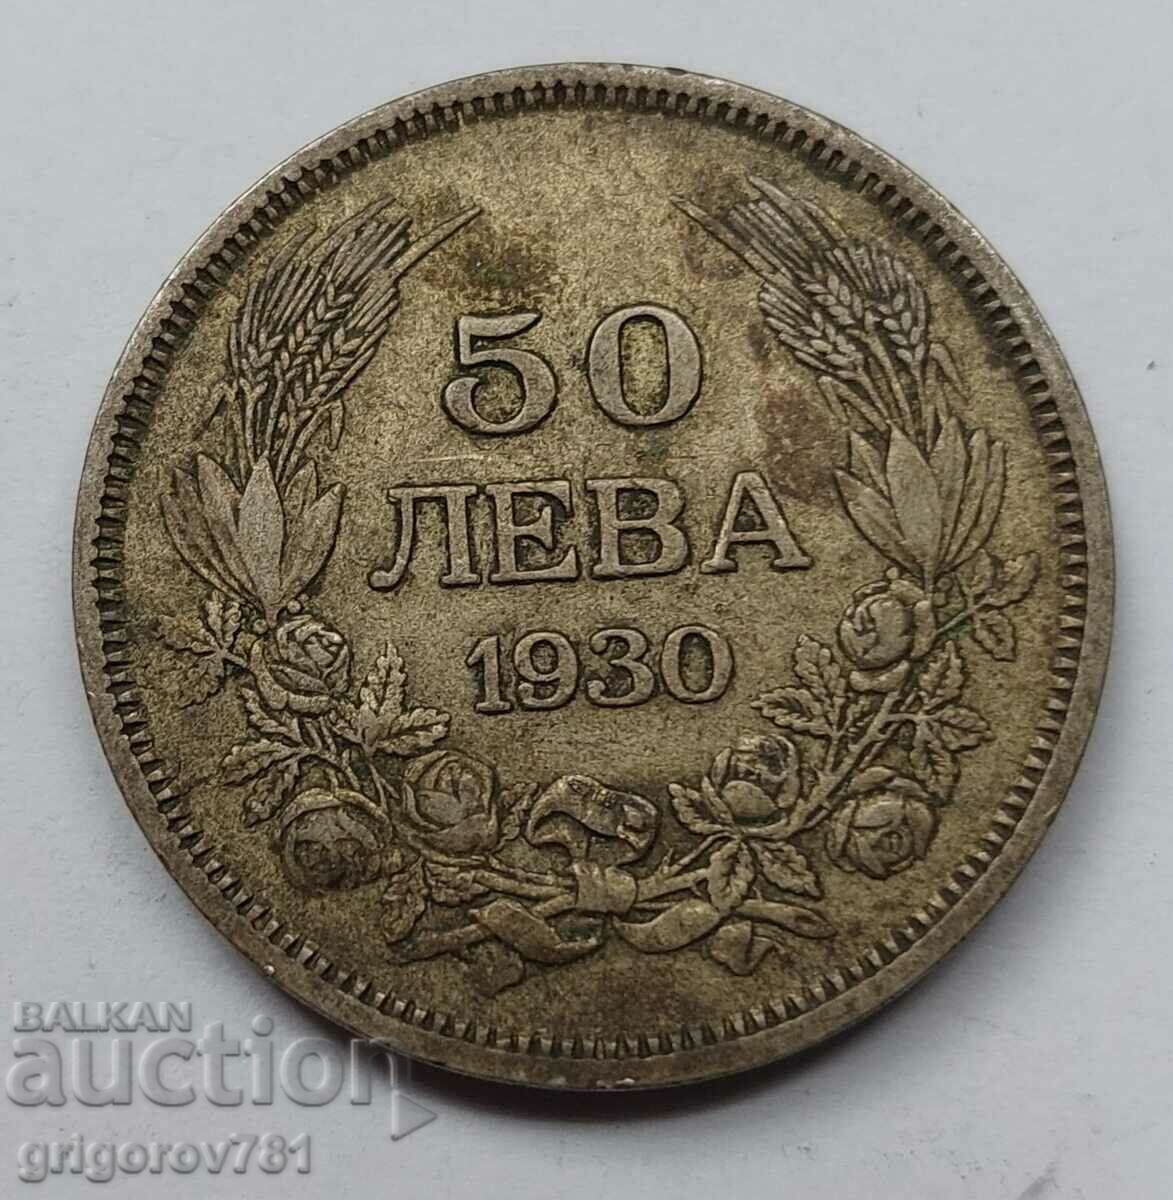 50 leva silver Bulgaria 1930 - silver coin #75